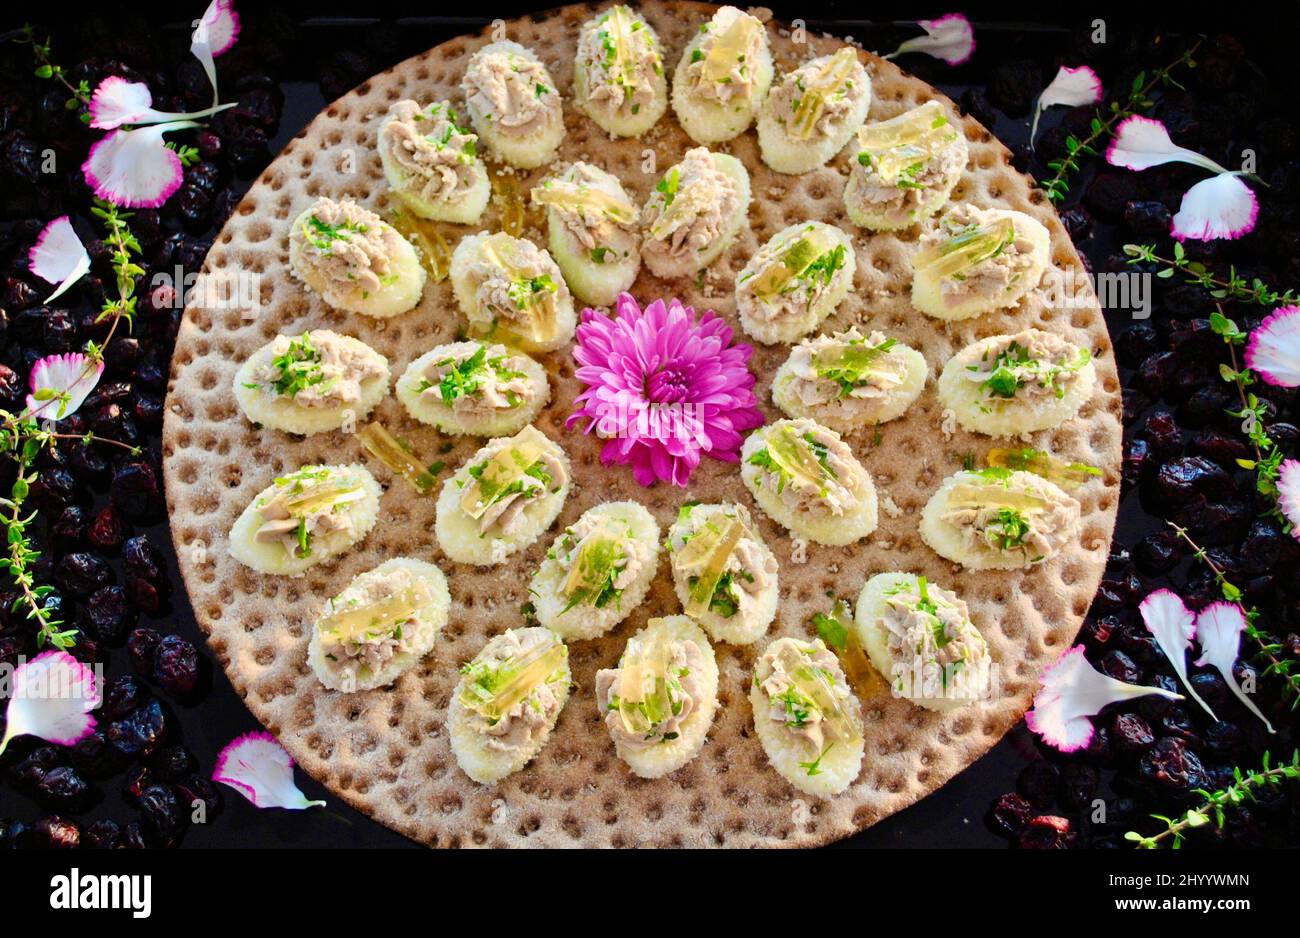 Mousse de trufa en manzana alrededor de la flor del malva sobre pan crujiente sueco decorado con arándanos secos y pétalos de flores Foto de stock